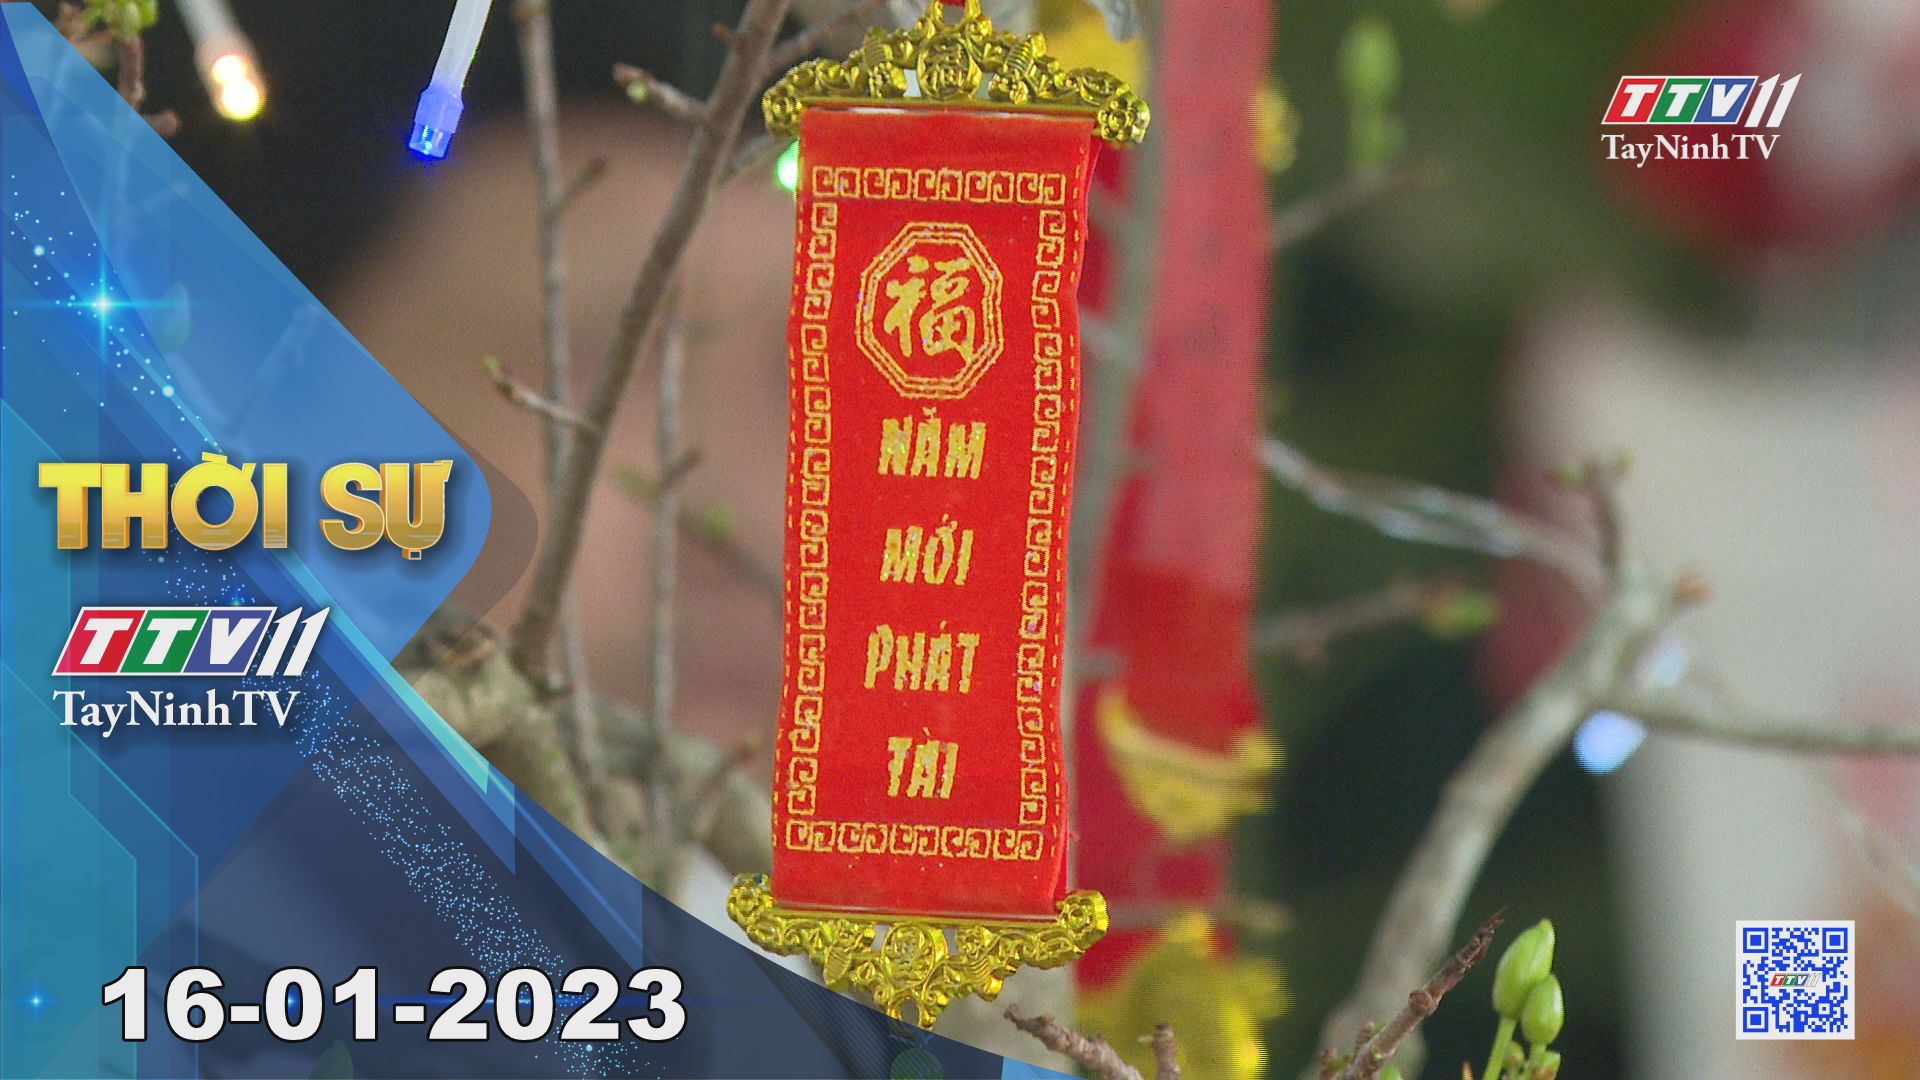 Thời sự Tây Ninh 16-01-2023 | Tin tức hôm nay | TayNinhTV